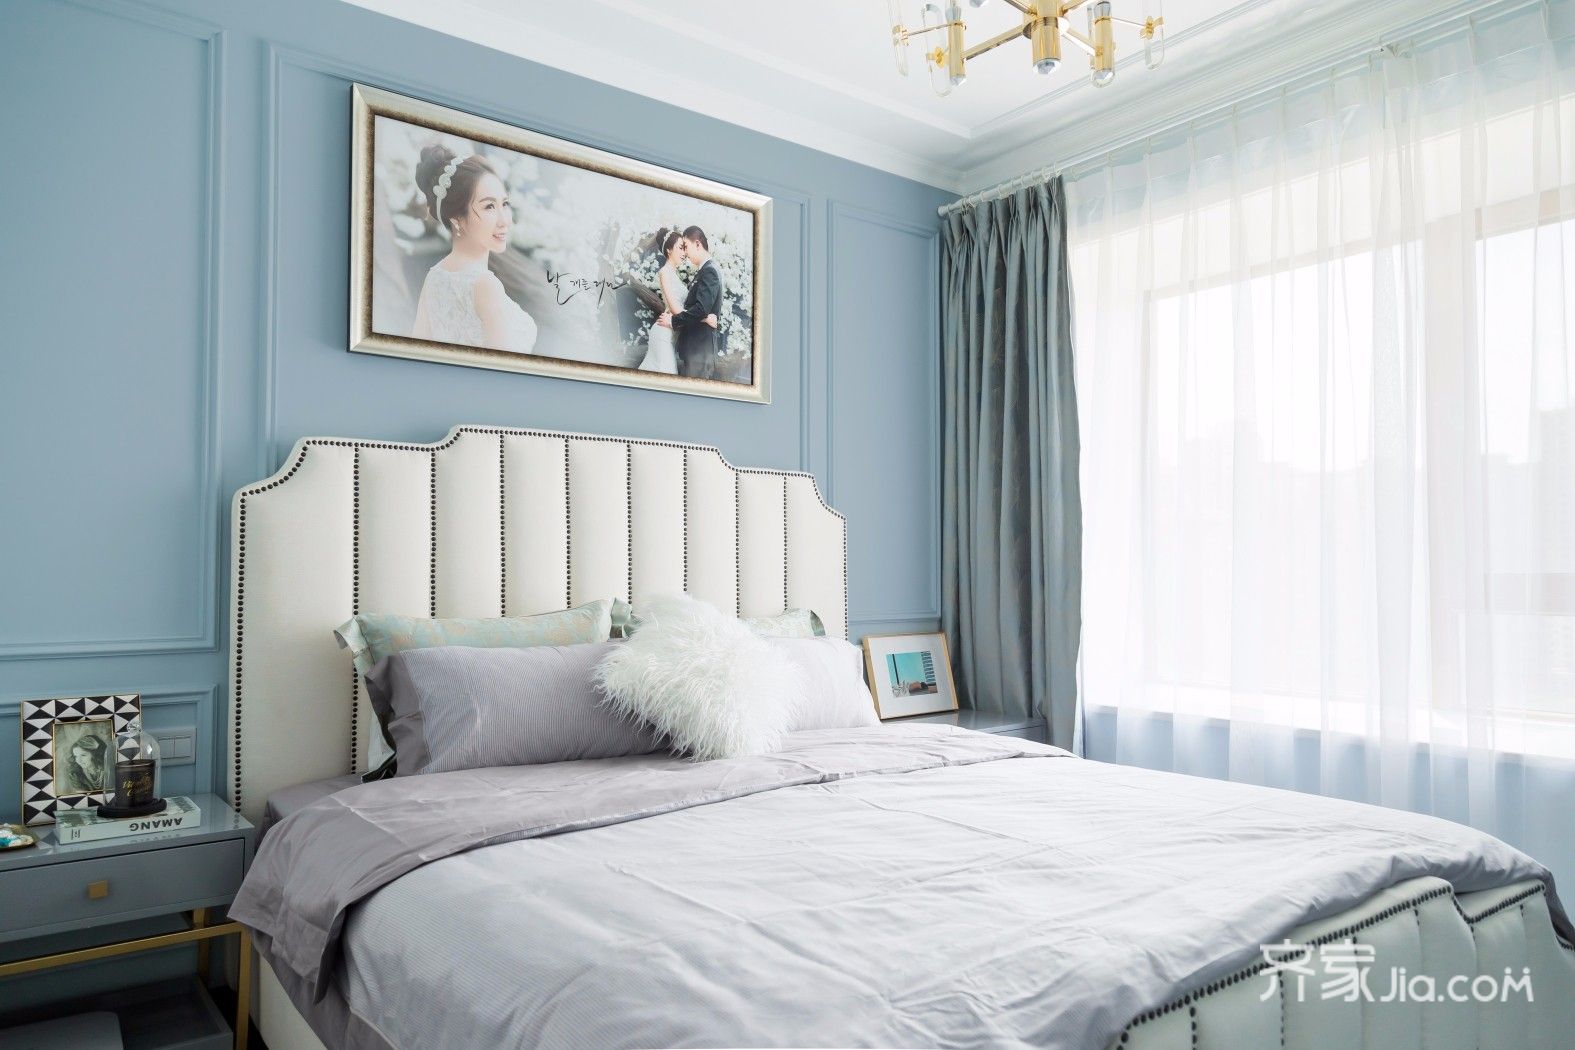 无锡装修案例 雾霾蓝打造美式轻奢风   雾霾蓝墙体与白色床头搭配,让